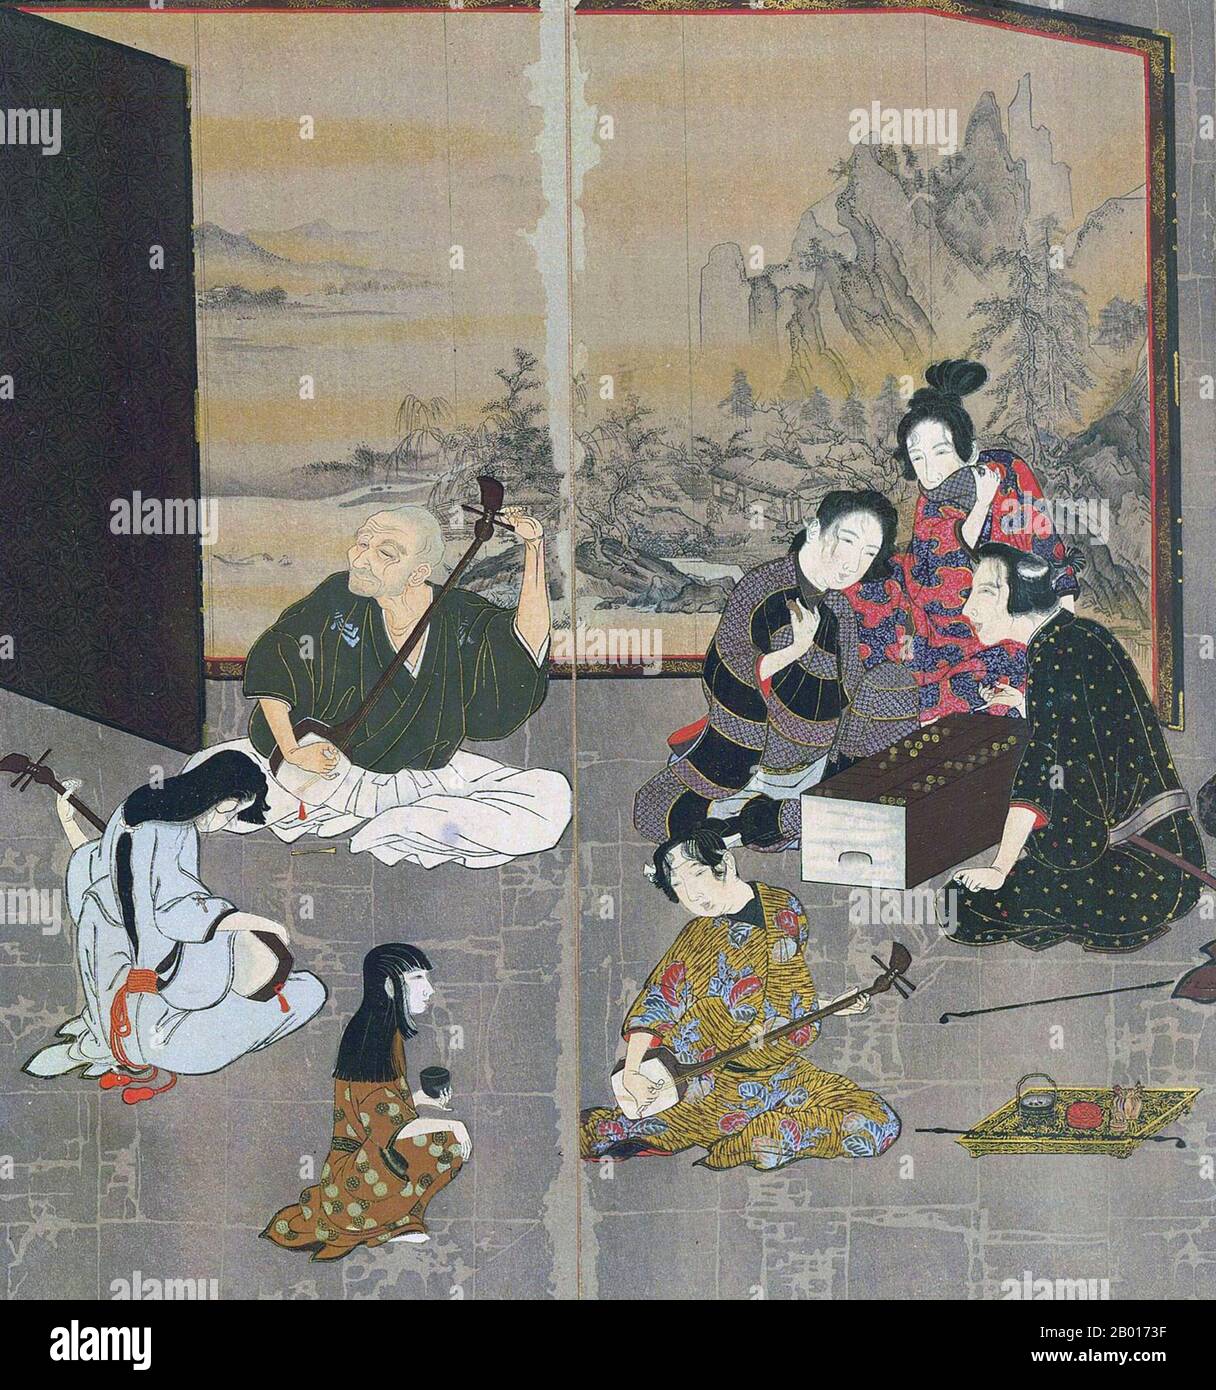 Japon: Section de l'écran Hikone, un byobu écran pliant, c.1624-1644.L'écran Hikone était un écran de pliage de byobo de l'ère de Ka'ei (c.1624-1644) de la période Edo.Peint sur papier feuille d'or et pliable en six parties, l'écran représente les quartiers de plaisir de Kyoto, avec des personnes jouant de la musique et des jeux.C'est un représentant de la peinture de genre japonaise moderne tôt, et vu par certains comme la première ukiyo-e art.Il a été désigné Trésor national en 1955. Banque D'Images